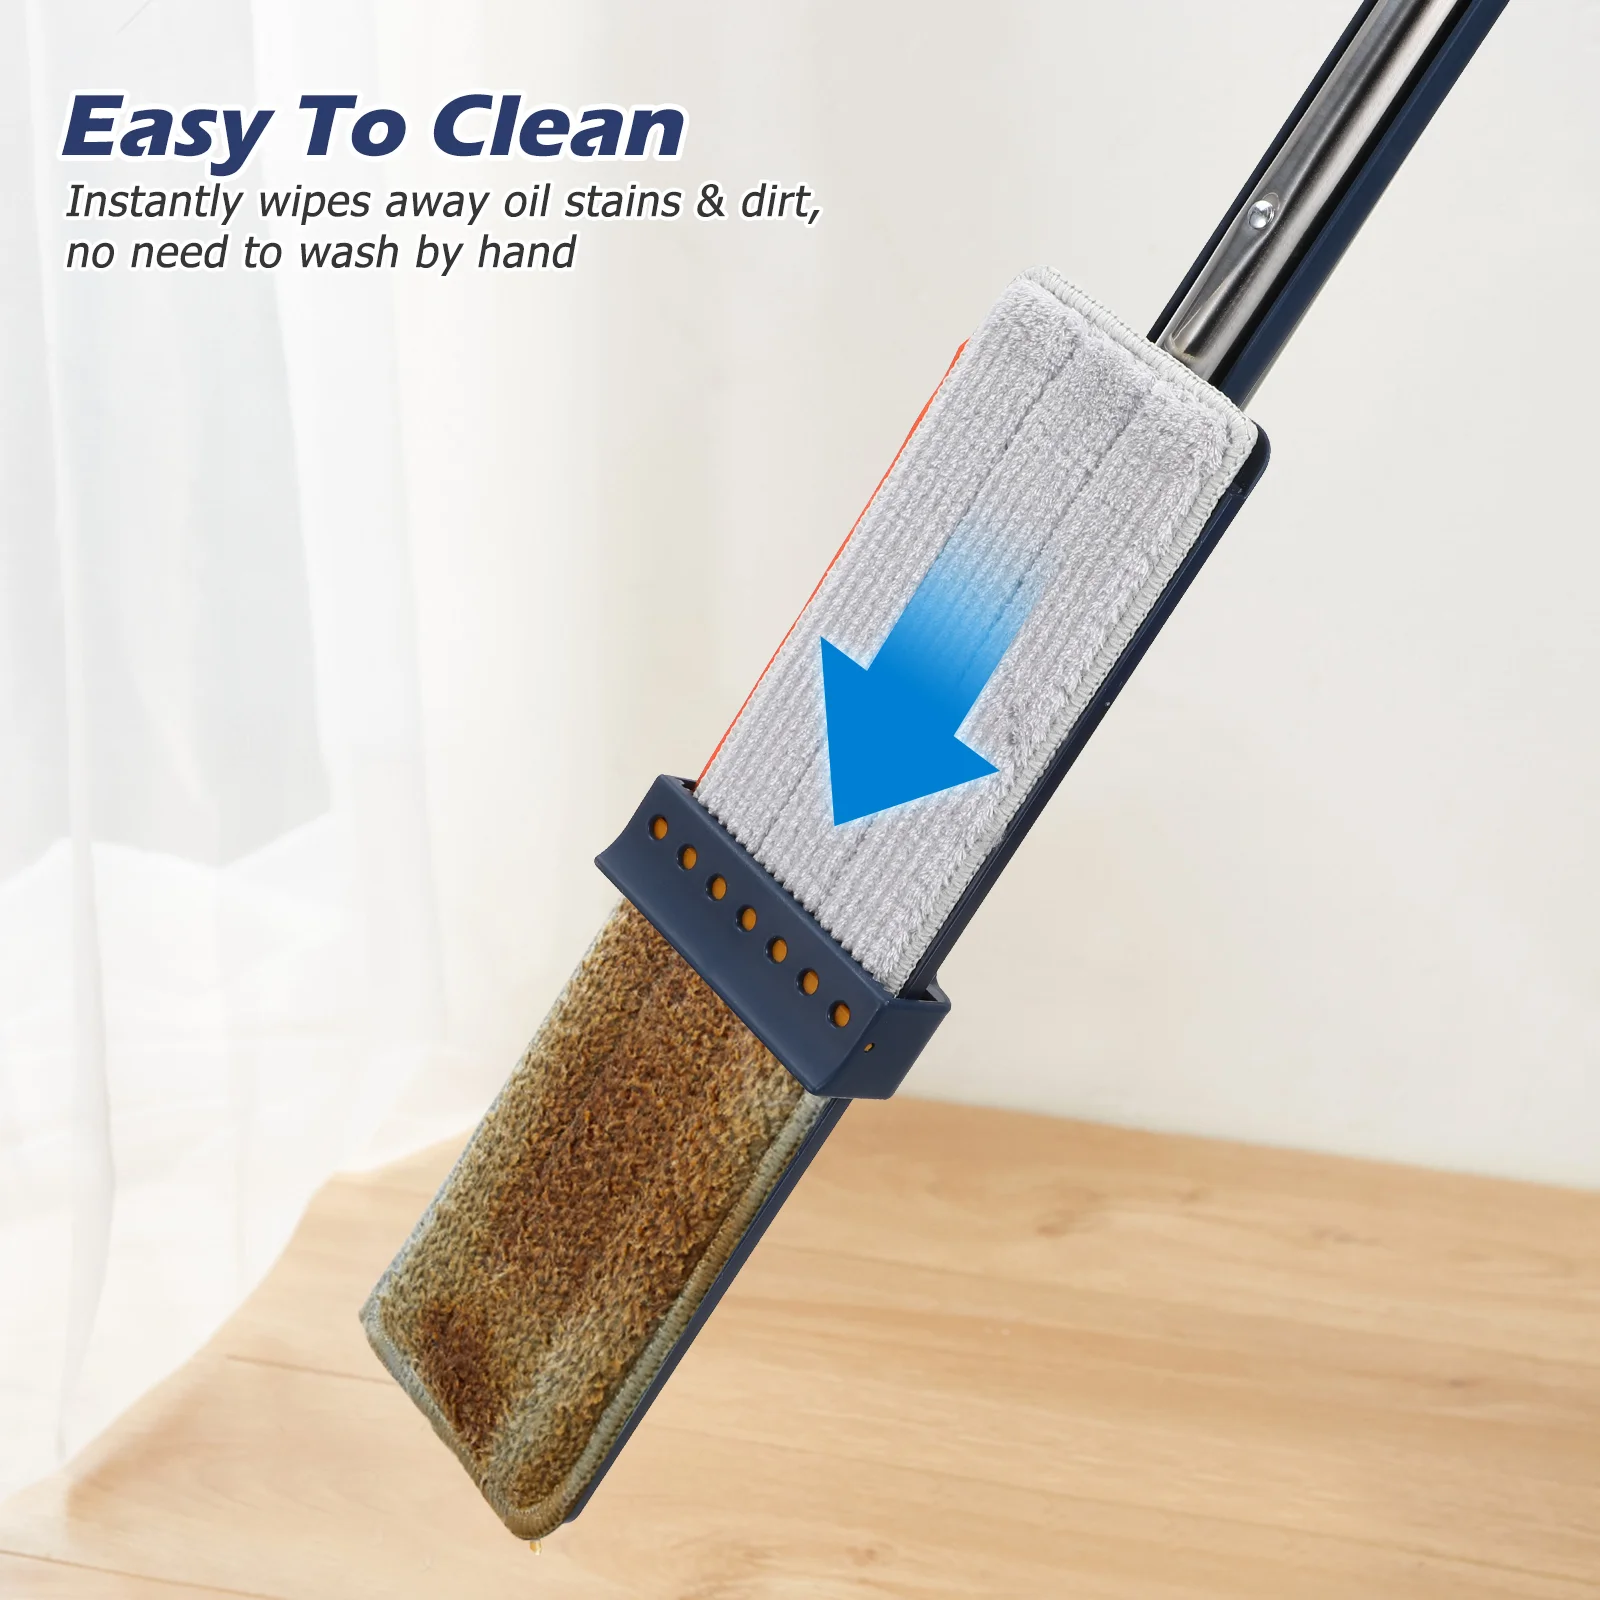 Большой Планшет для плоского дома в стиле швабры mop Многофункциональный инструмент для уборки без мытья из ПВХ